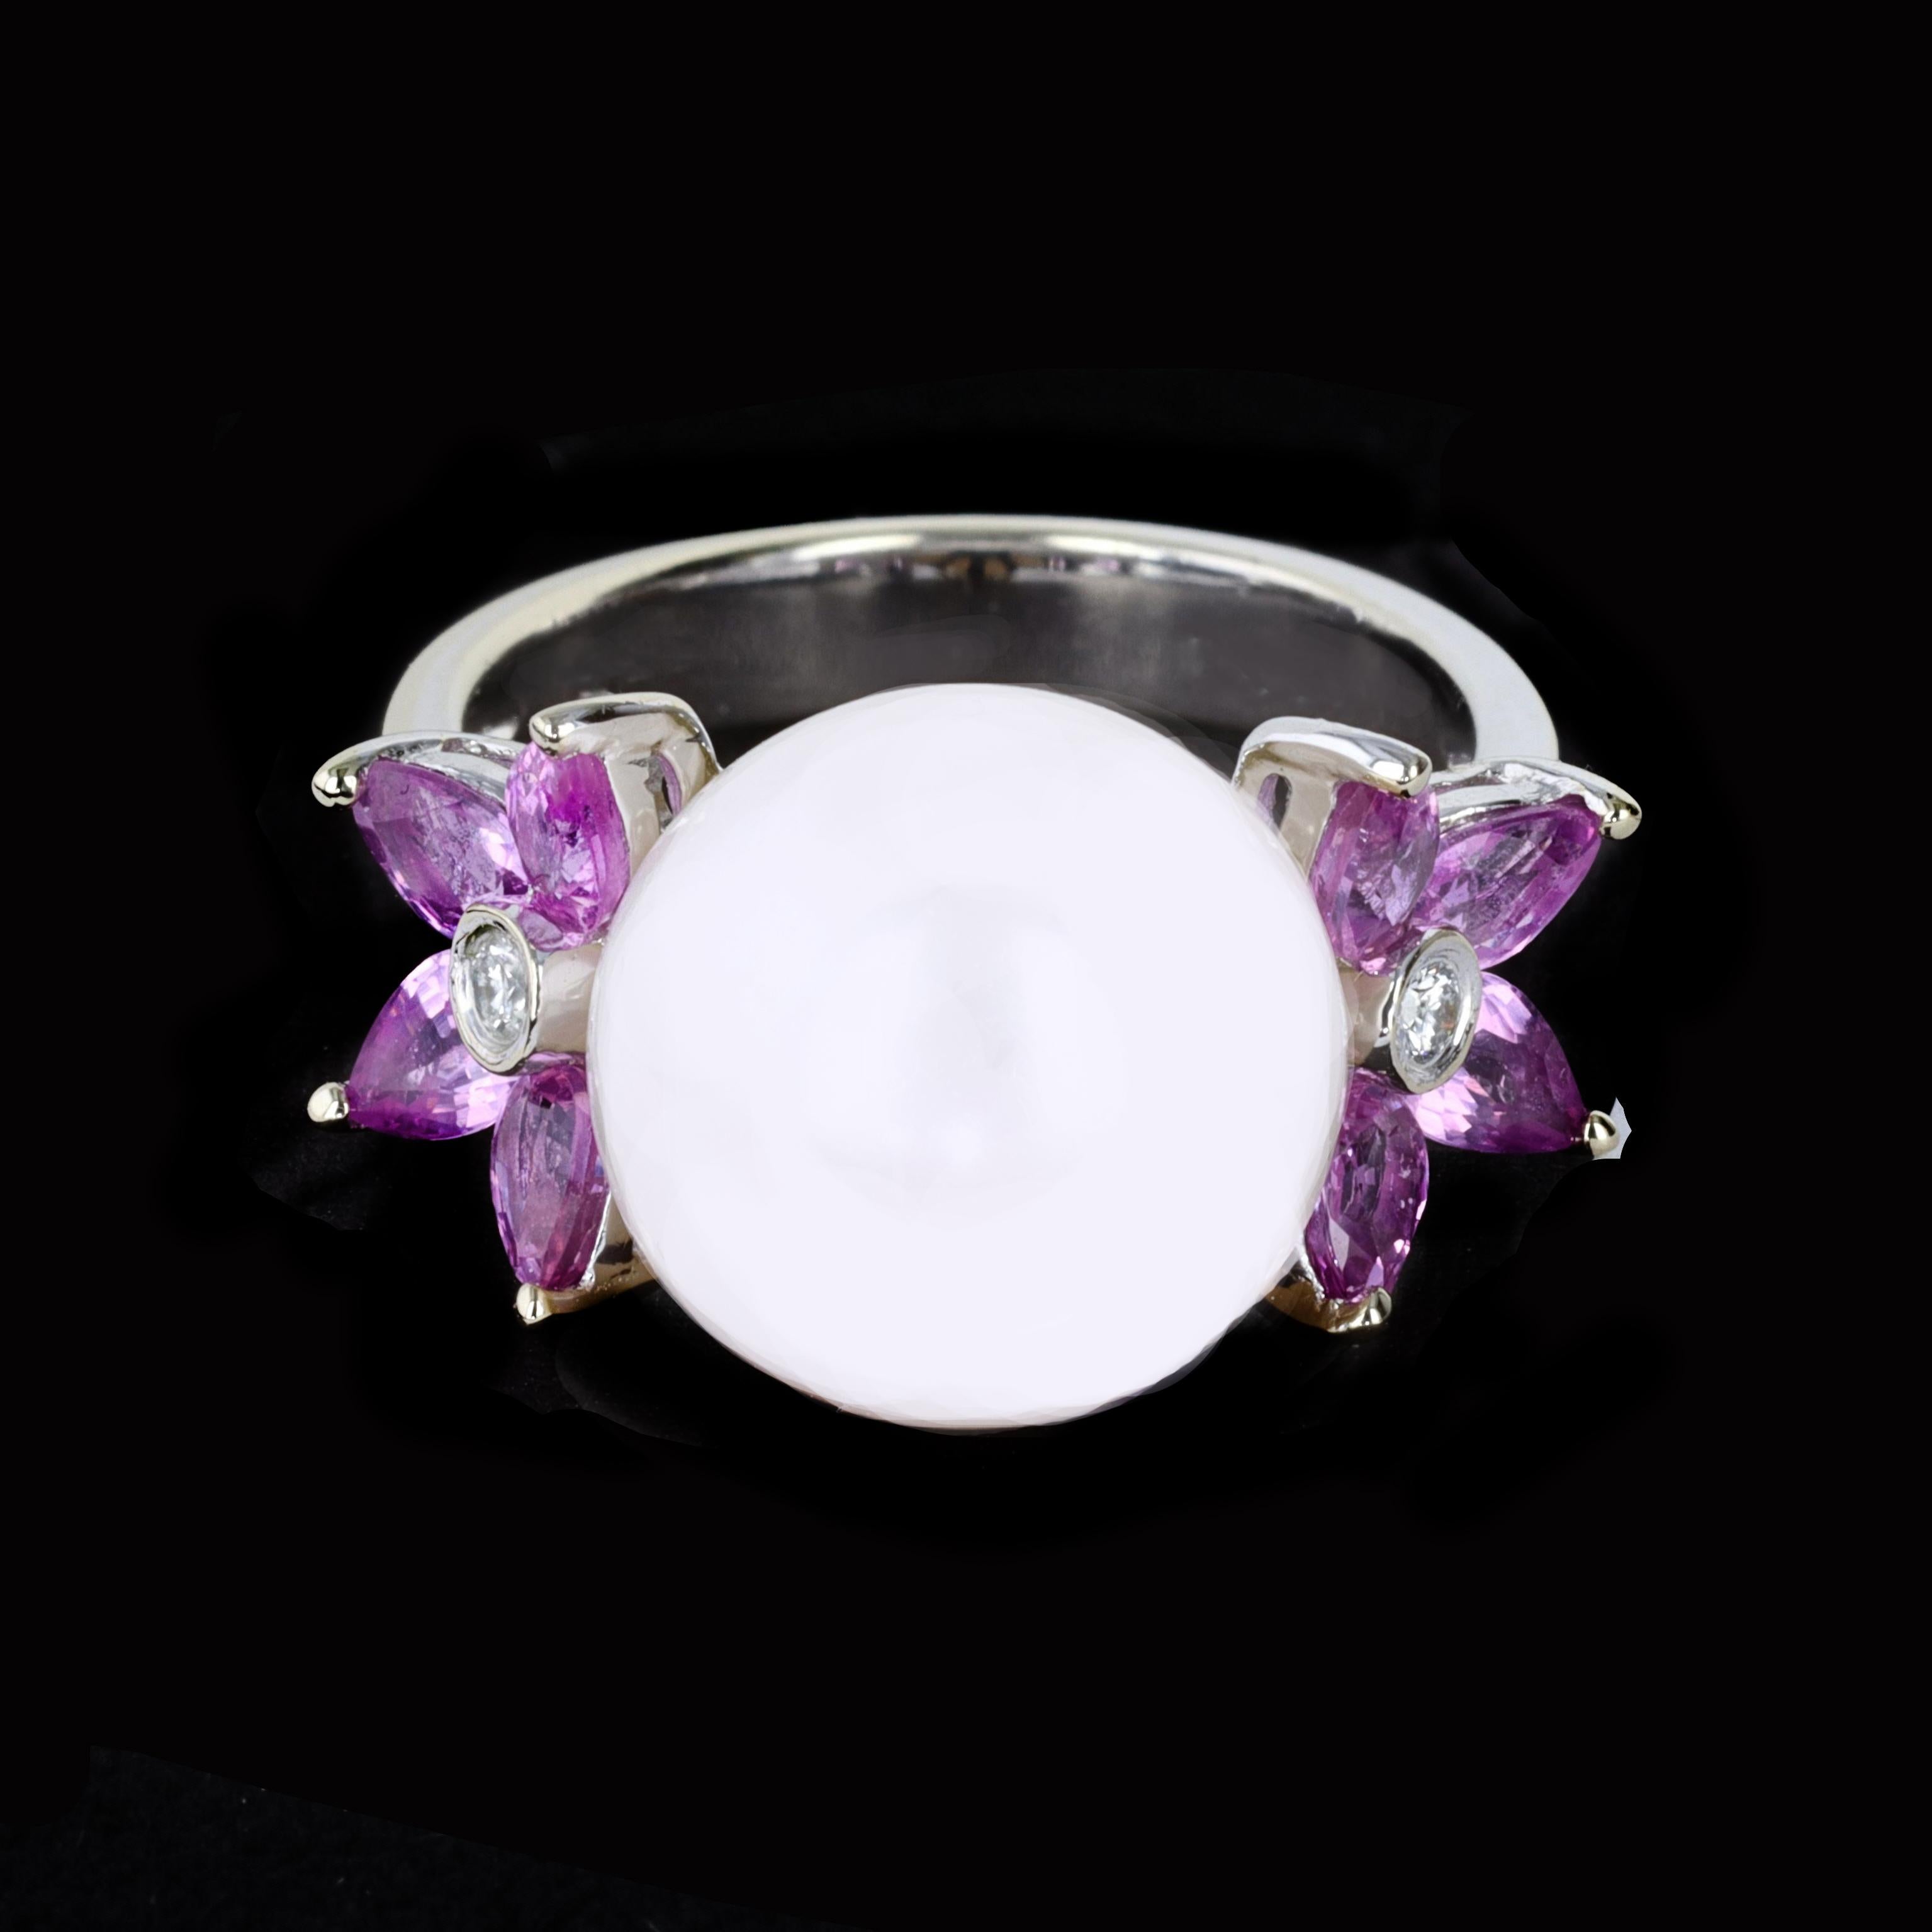 Dieser Ring aus 18-karätigem Weißgold strahlt Romantik aus mit der perfekten Kombination aus leuchtenden rosa Saphiren im Marquise-Schliff und einer samtigen weißen Perle. In der Mitte des Rings befindet sich eine schöne weiße Perle, die von rosa